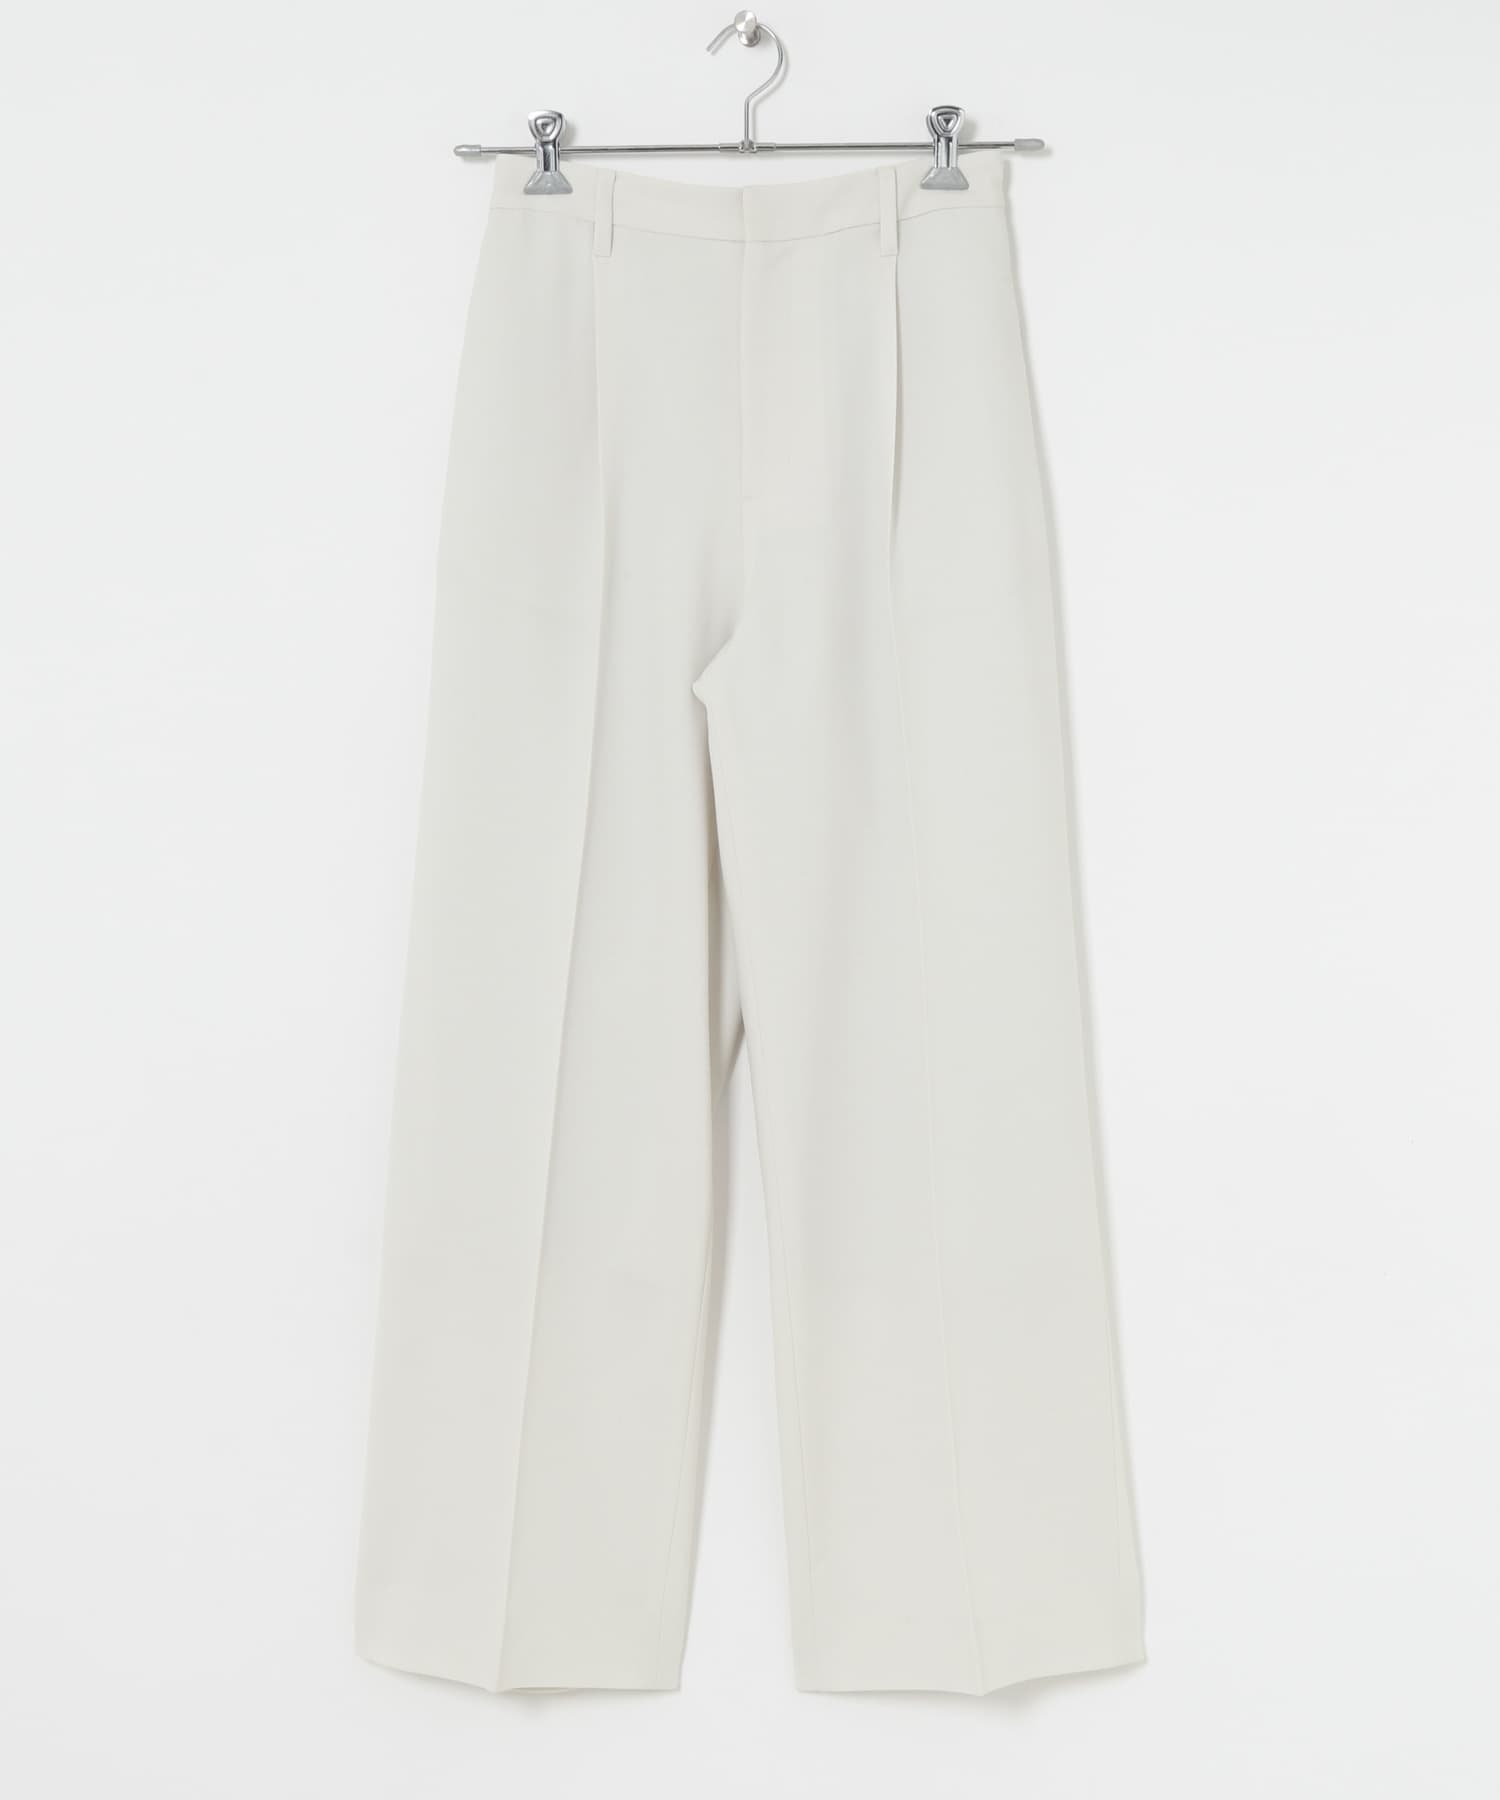 中央壓線直筒褲(米色-36-OFF WHITE)